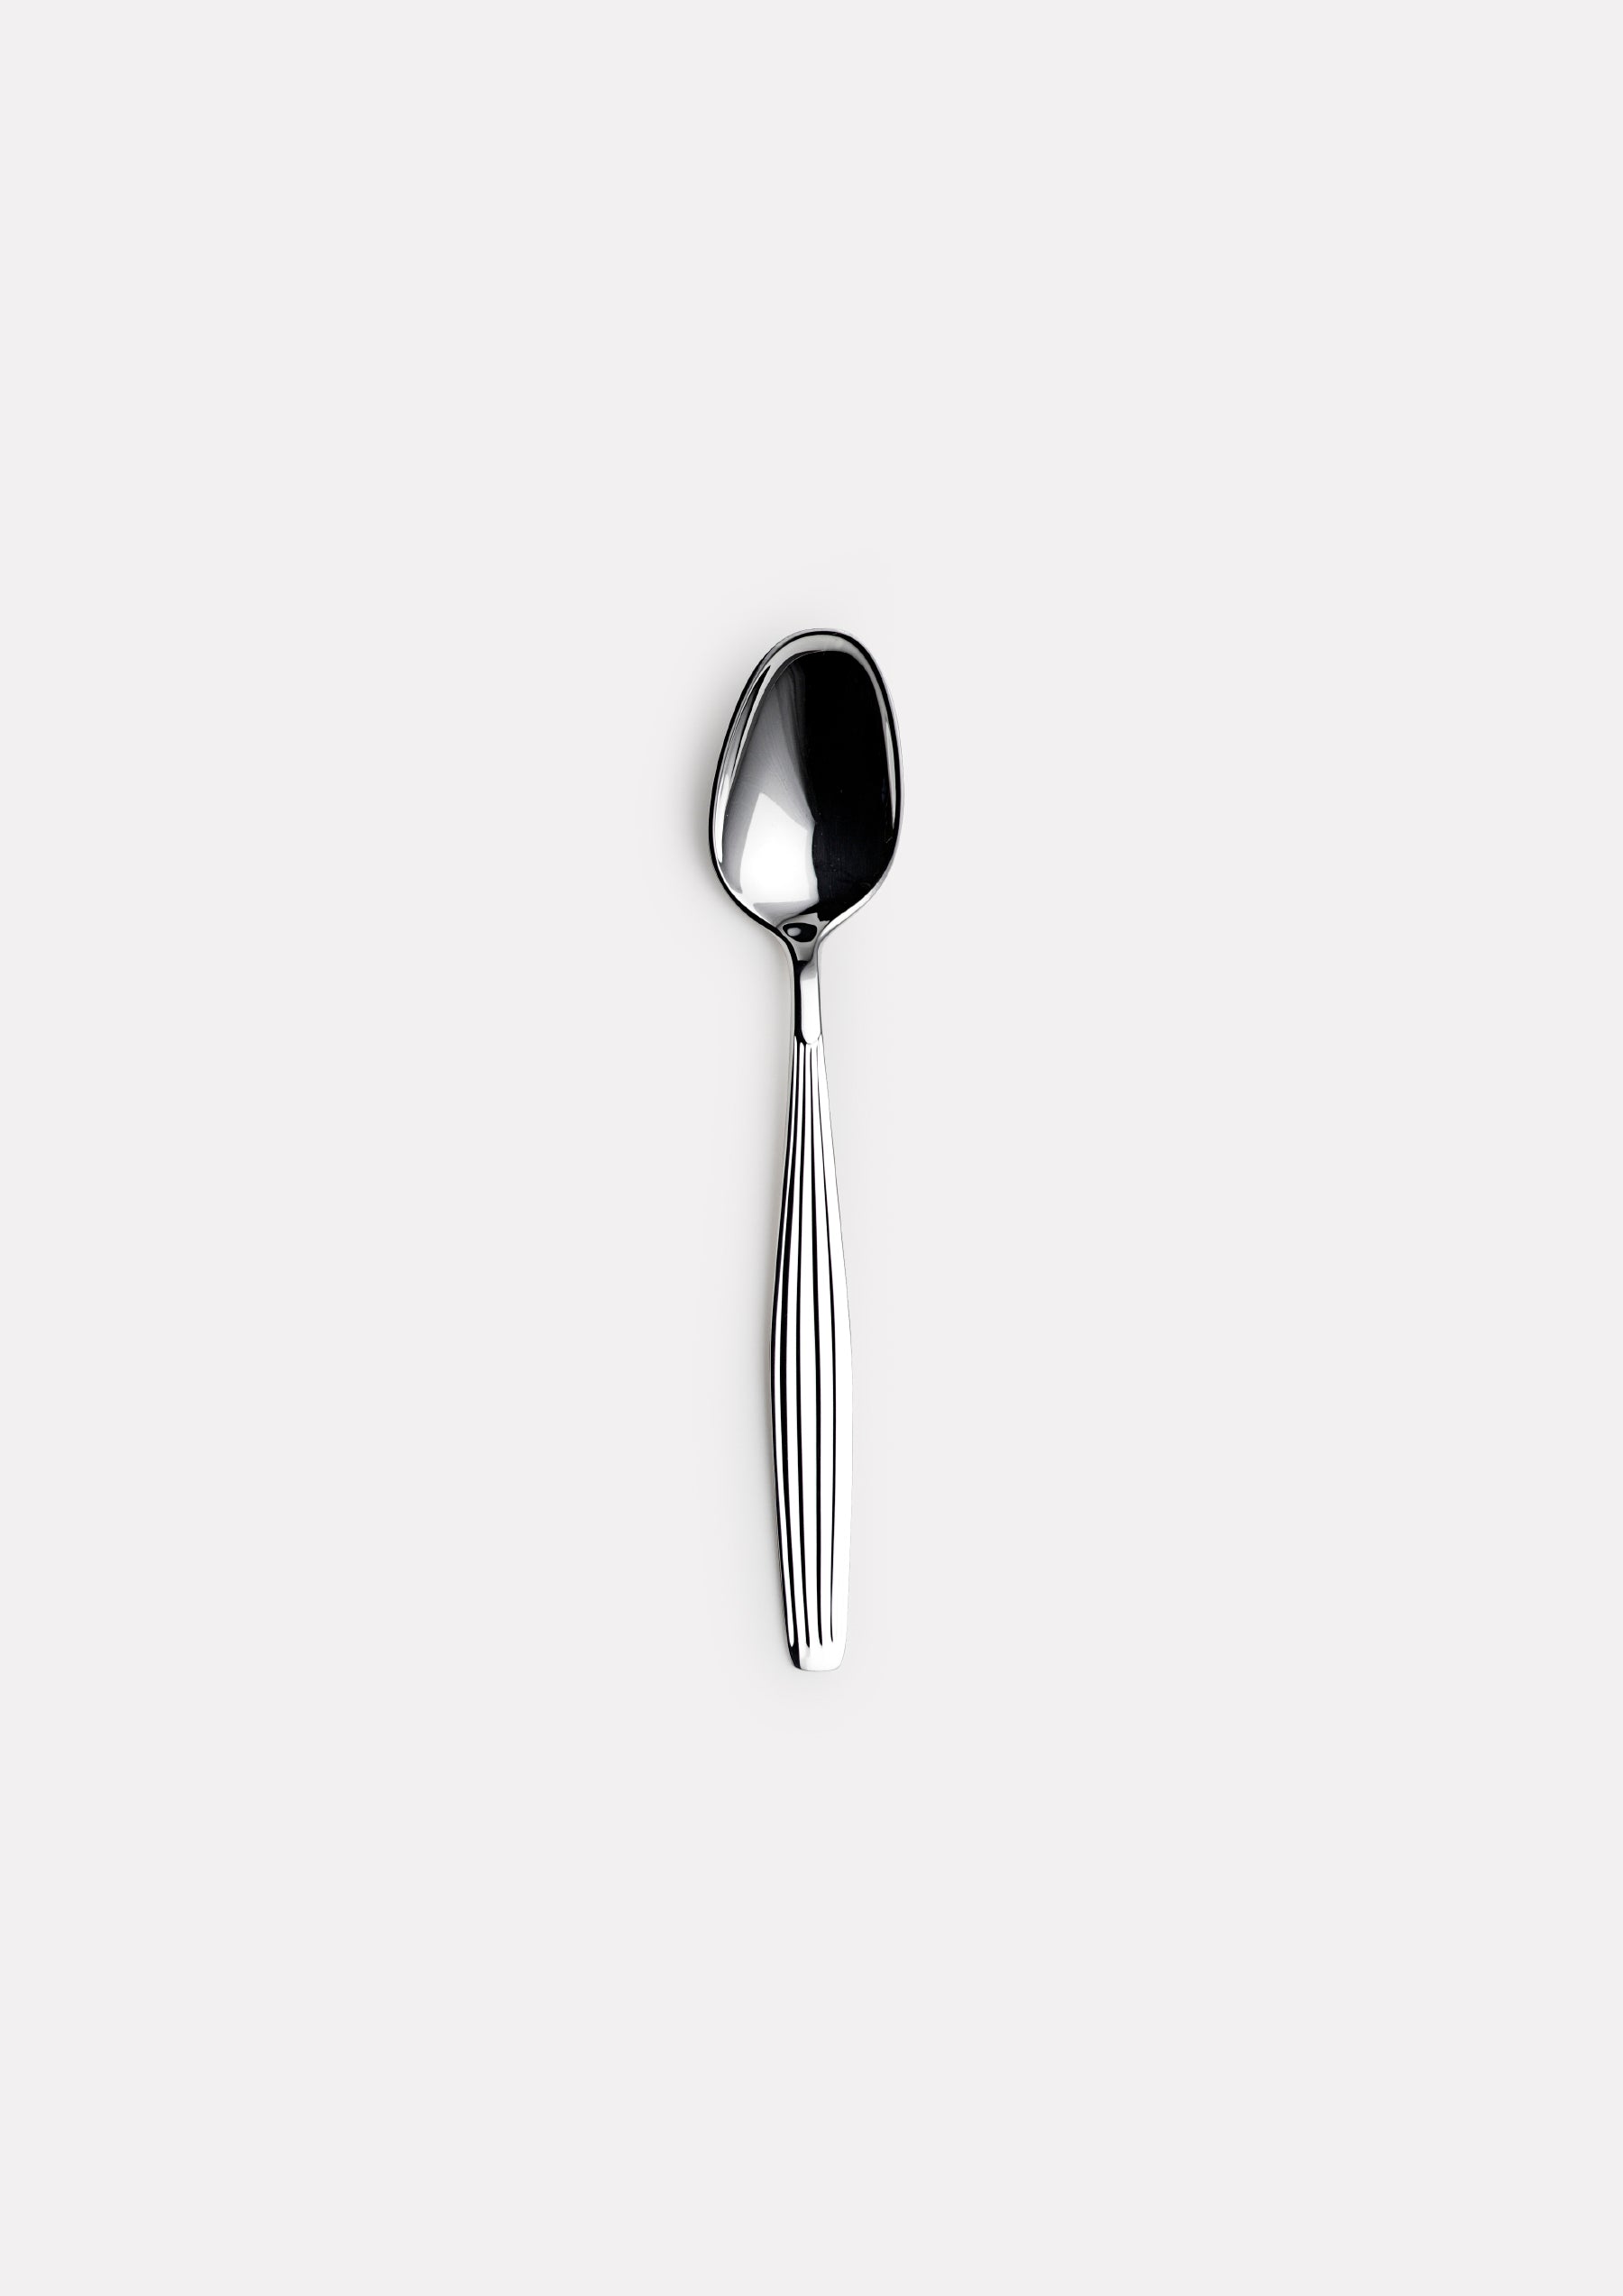 A teaspoon 